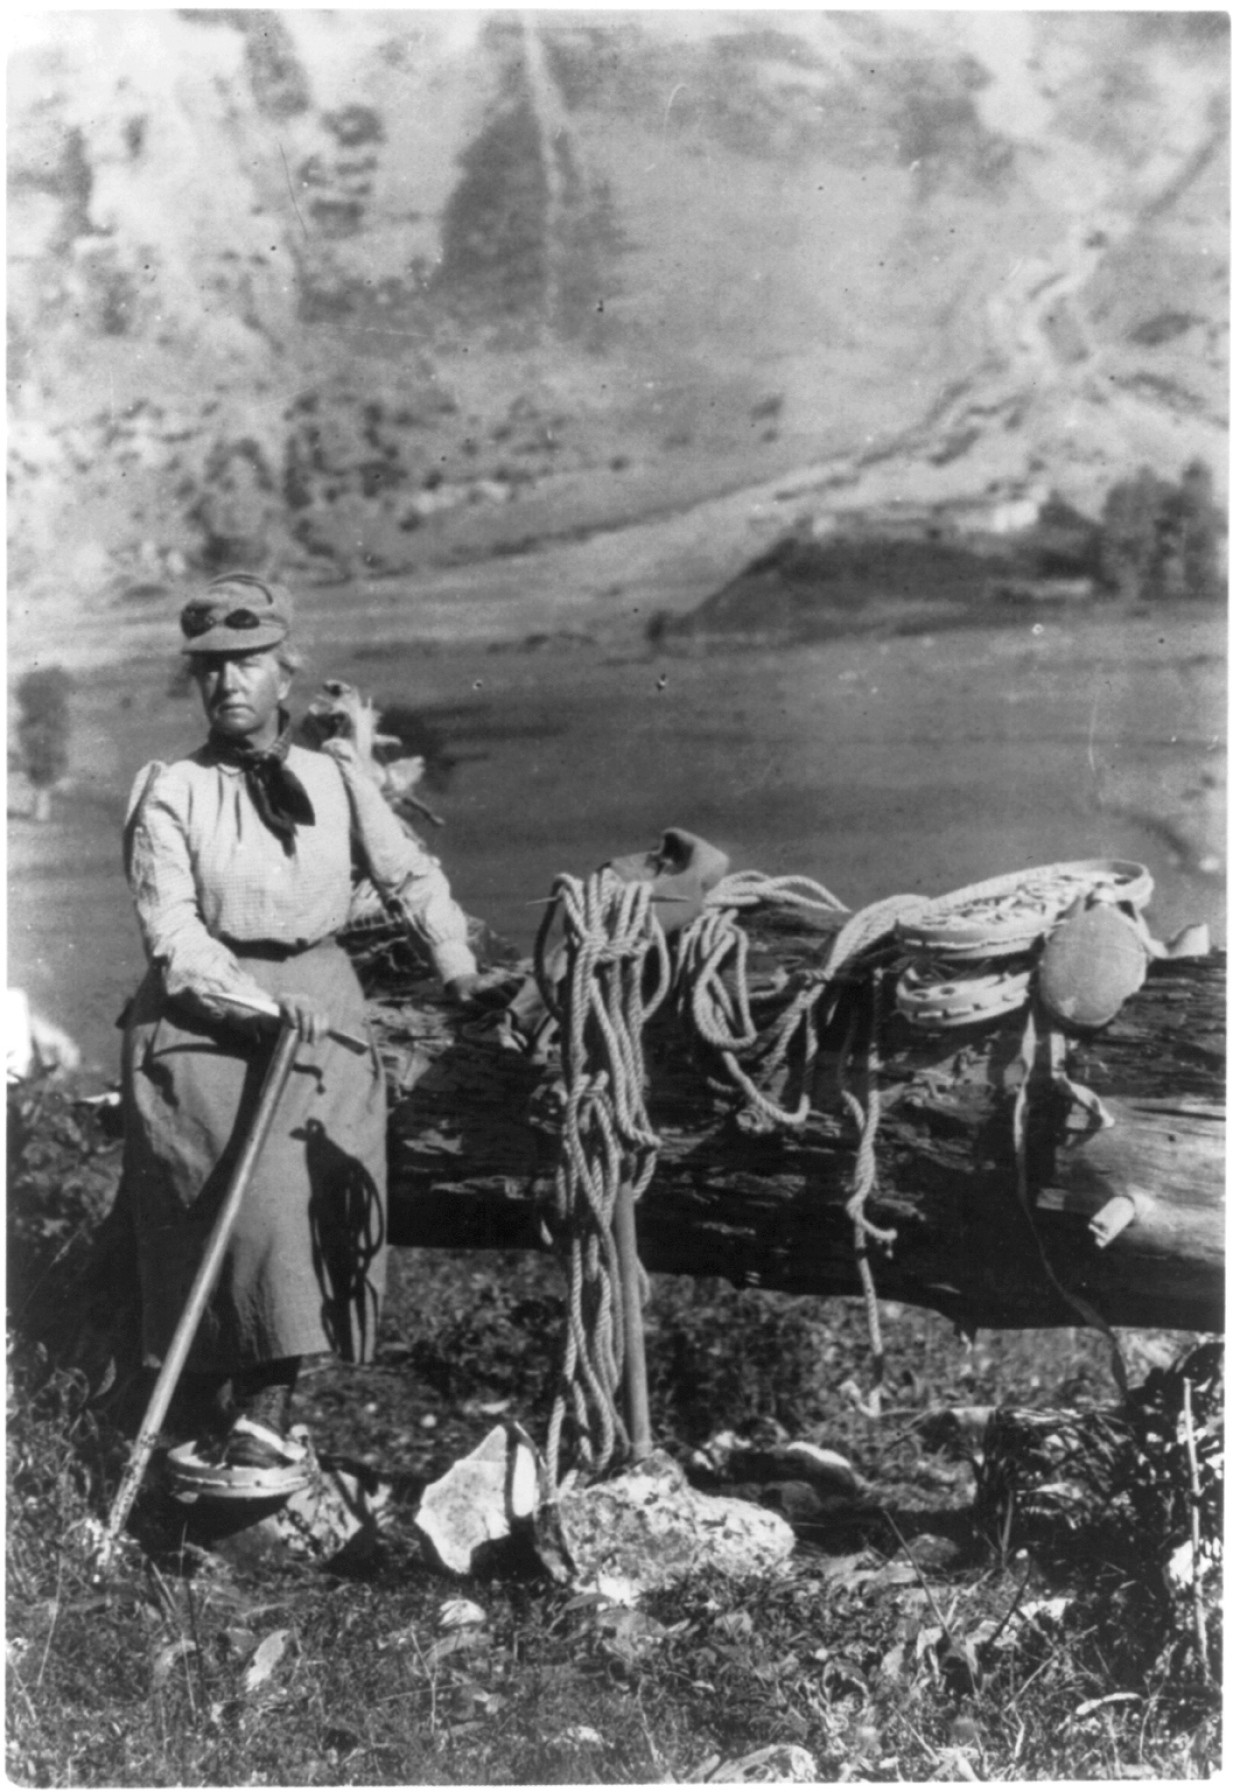 Die Geographin Fannie Bullock Workman konkurrierte mit der Bergsteigerin Annie Smith Peck um das Ersteigen von Bergen. Im Himalaja erklomm sie 1906 einen Gipfel von 6930 Metern.